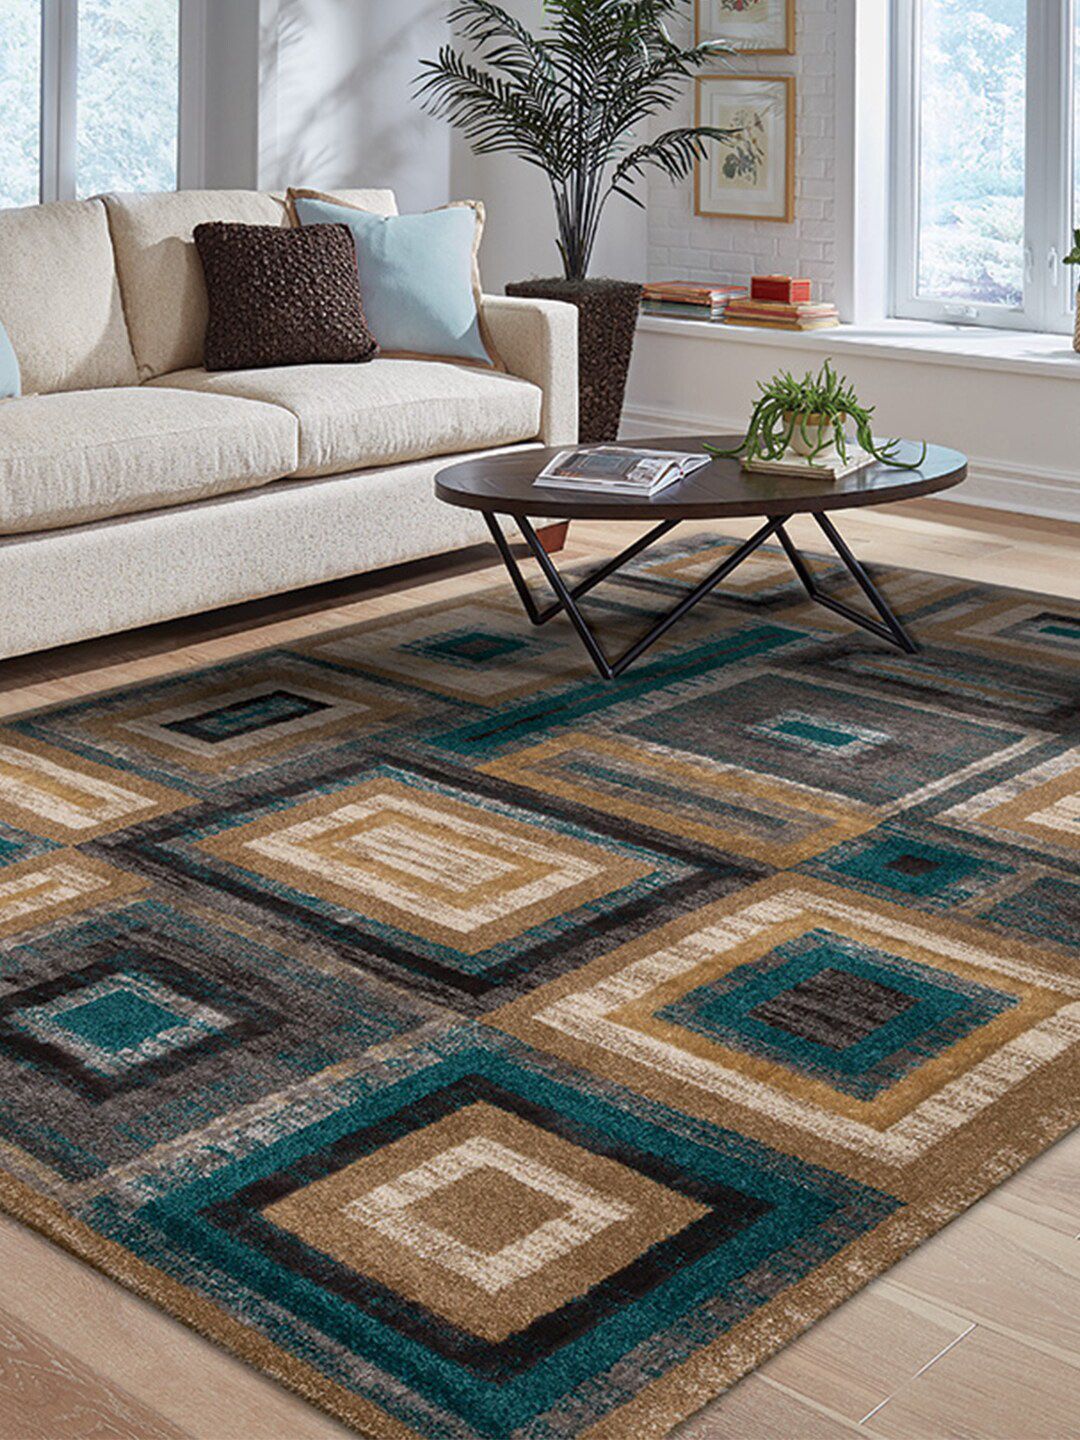 DDecor Multicolored Geometric Motifs Contemporary Carpet Price in India